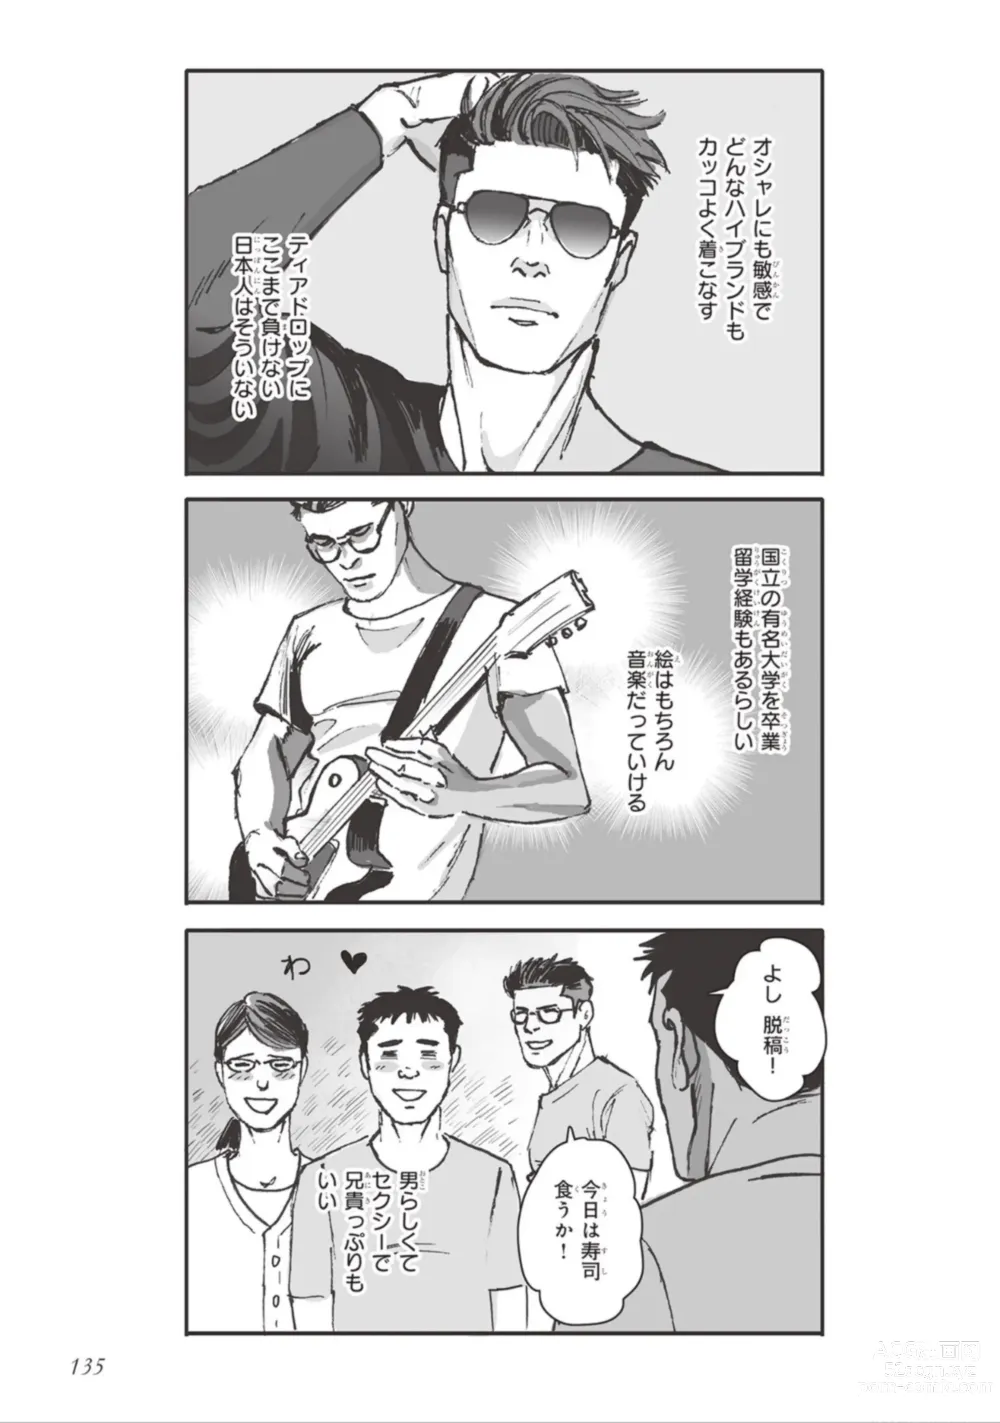 Page 137 of manga Bara to Tanpopo - Rose & Dandelion Jou